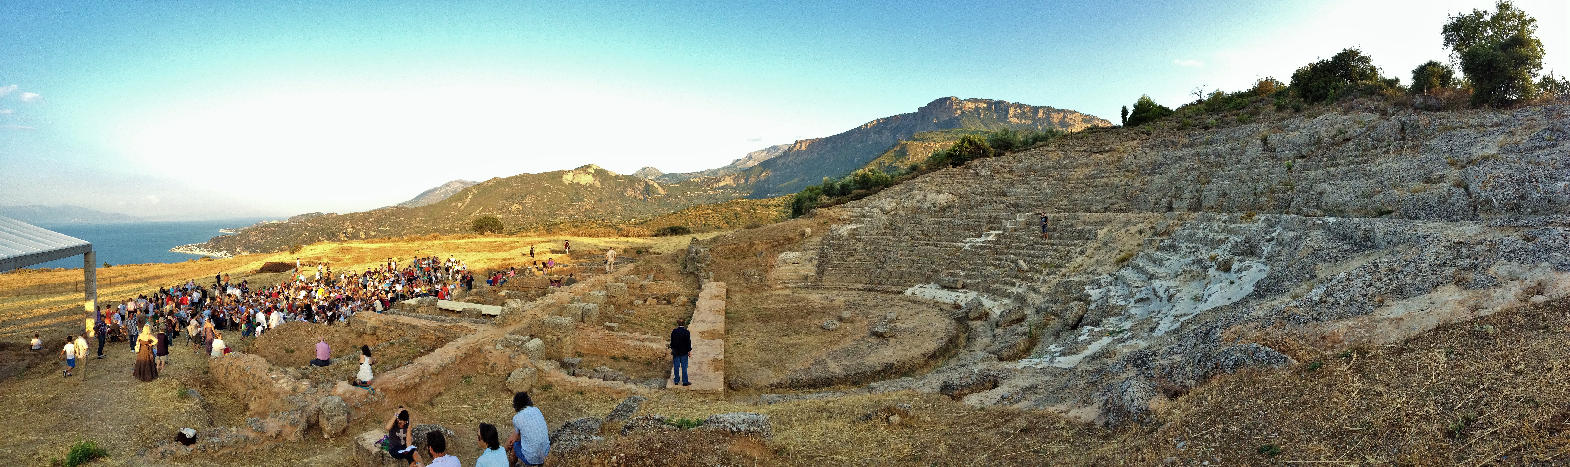 αρχαίο θέατρο Αιγείρας